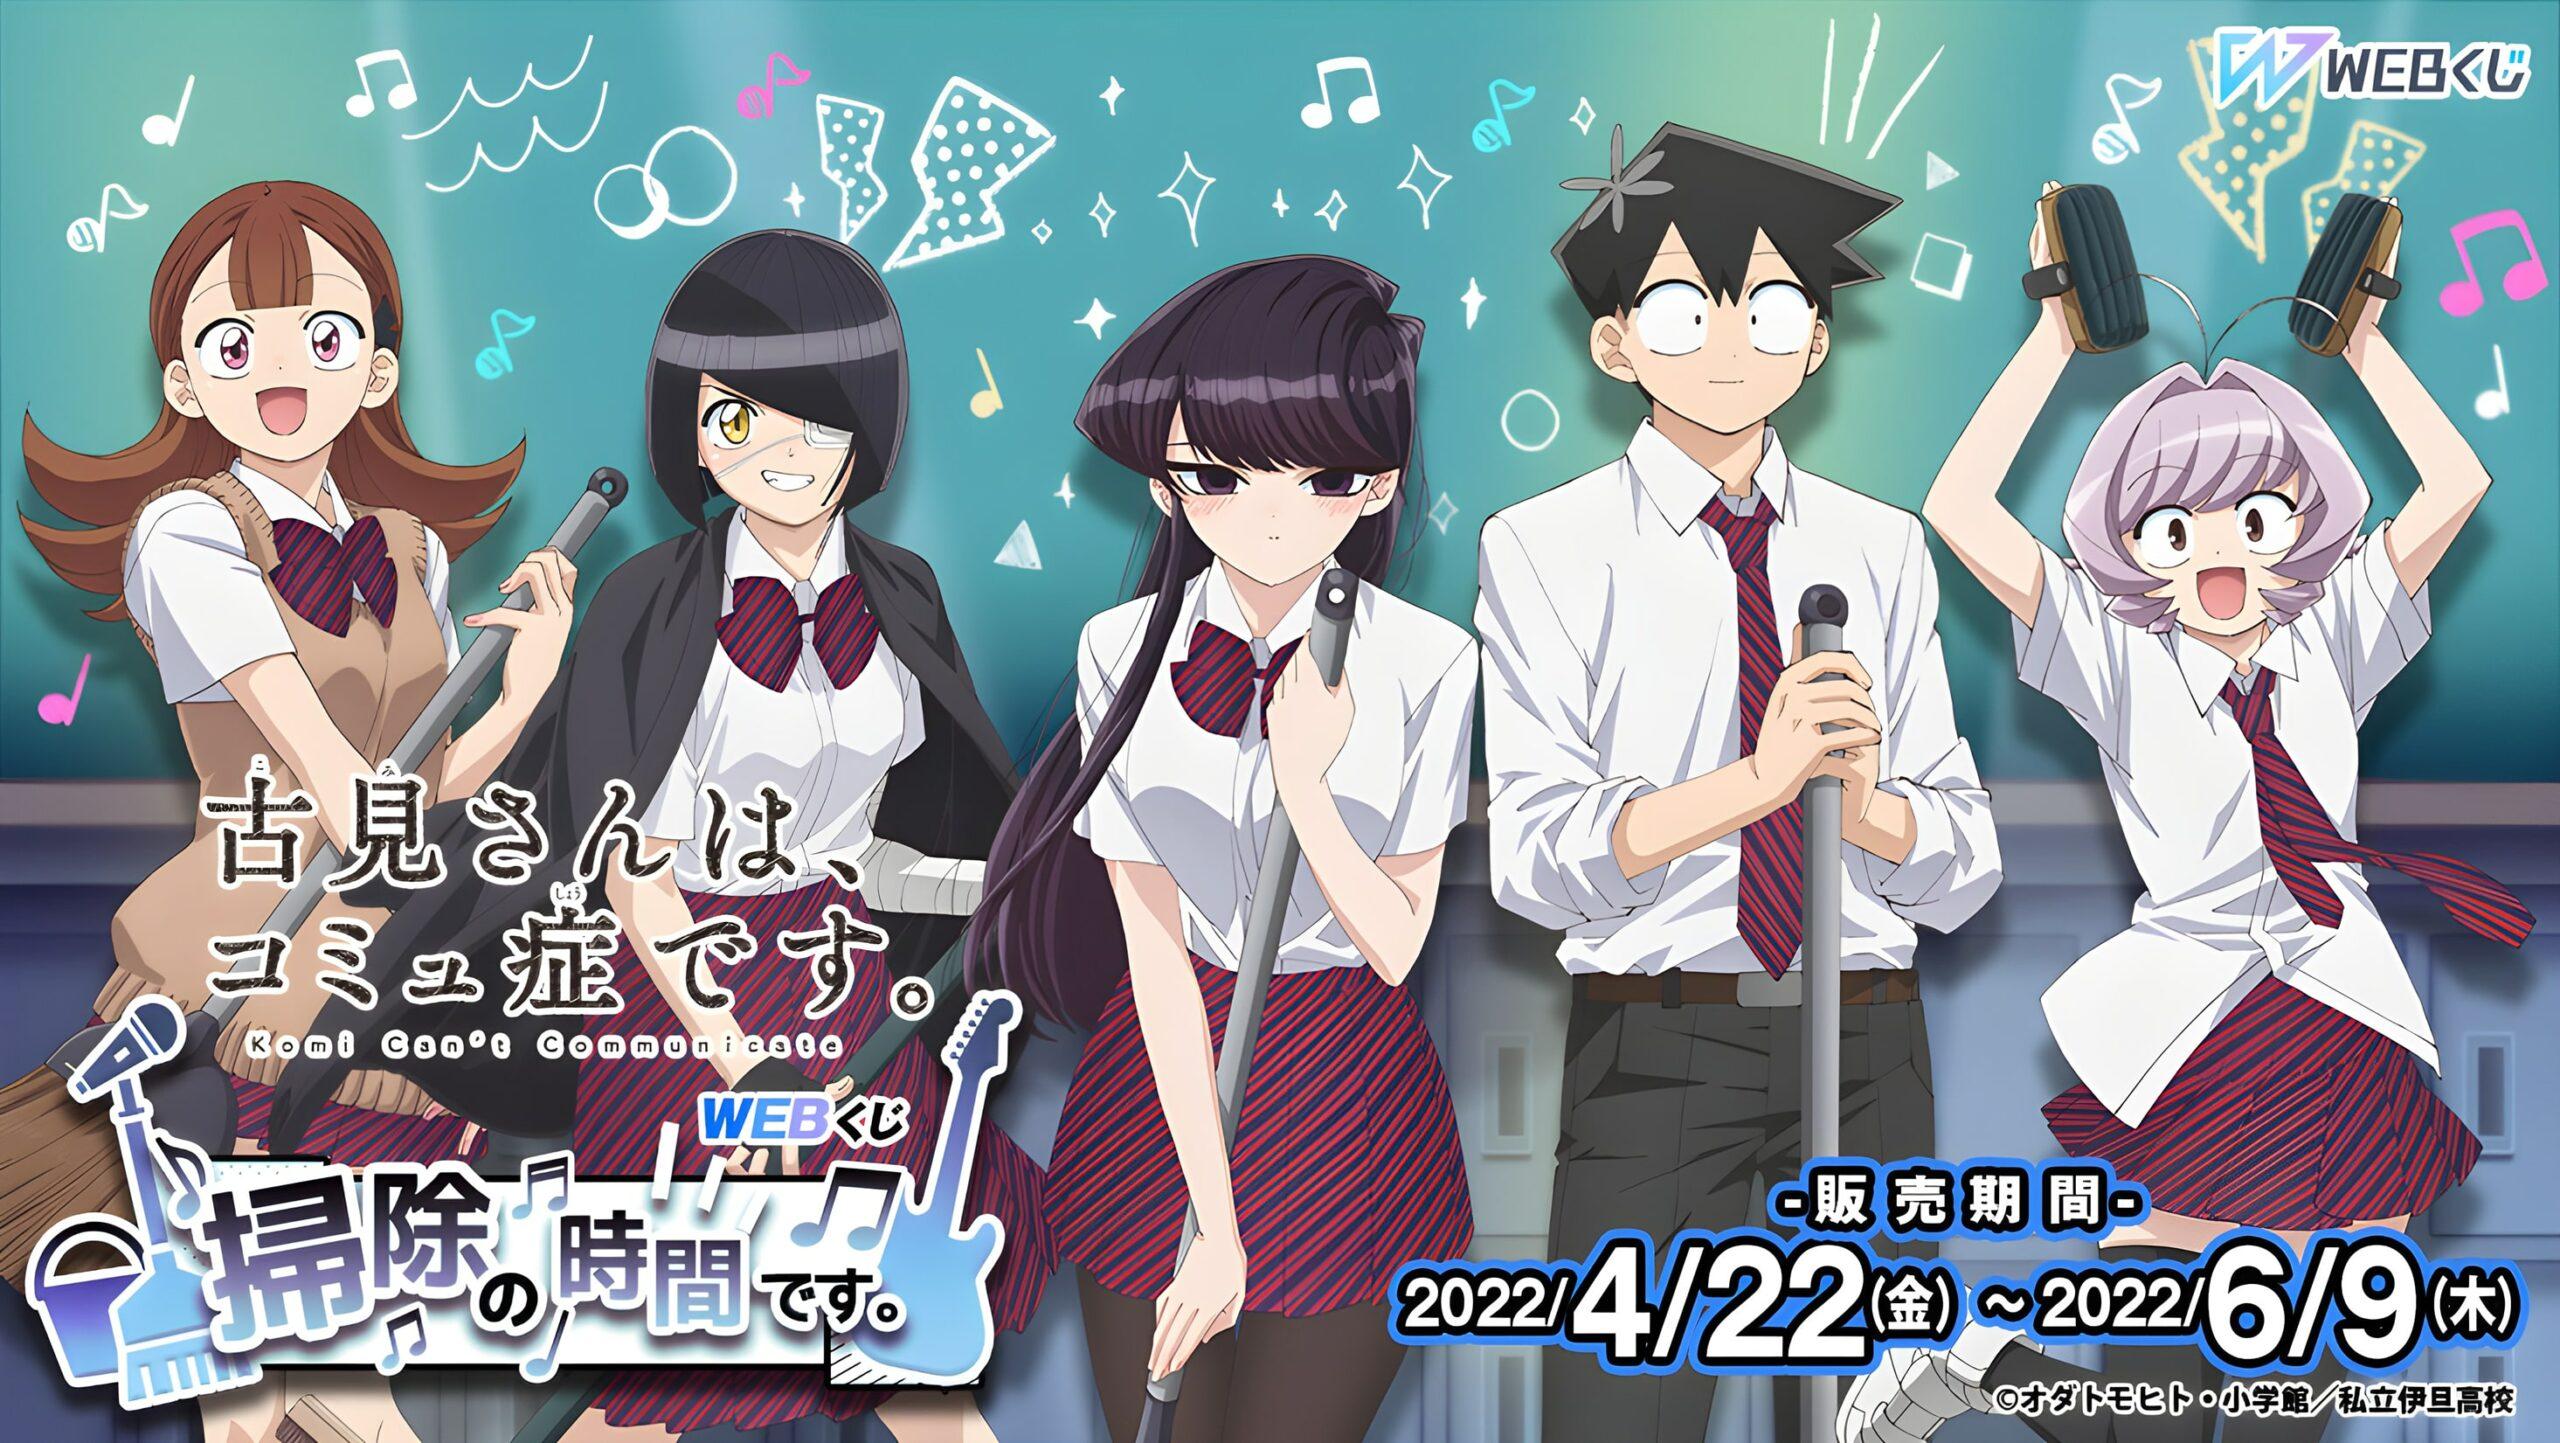 Komi-san y sus compañeros forman una banda para una lotería de productos